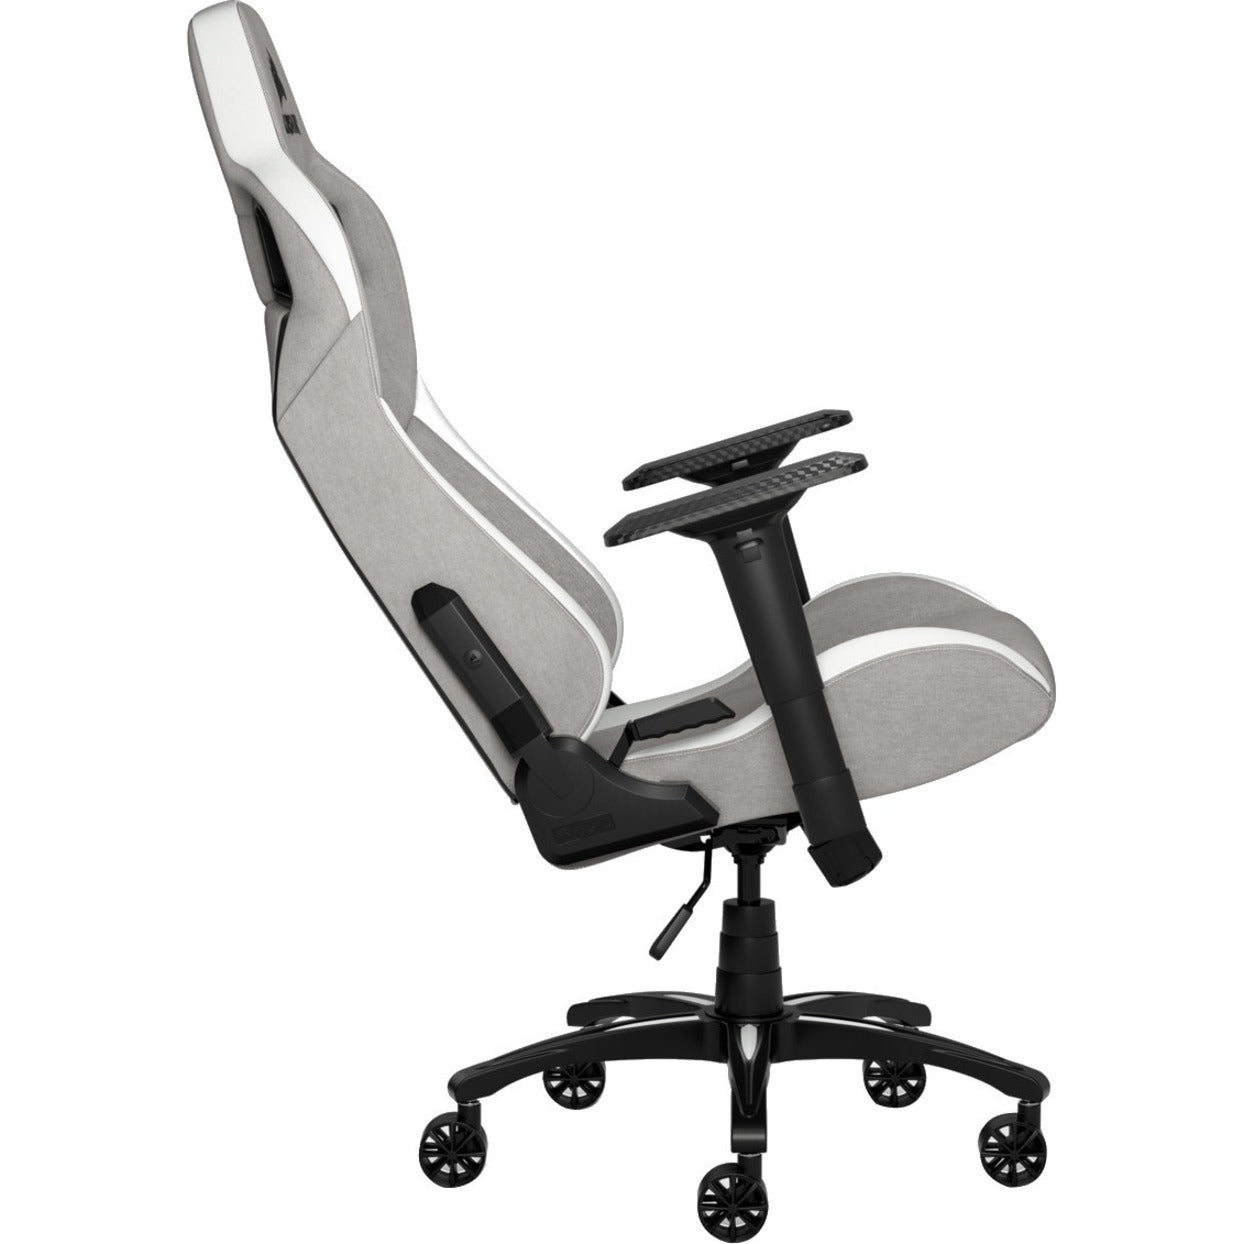 Corsair T3 RUSH Gaming Chair - Gray/White